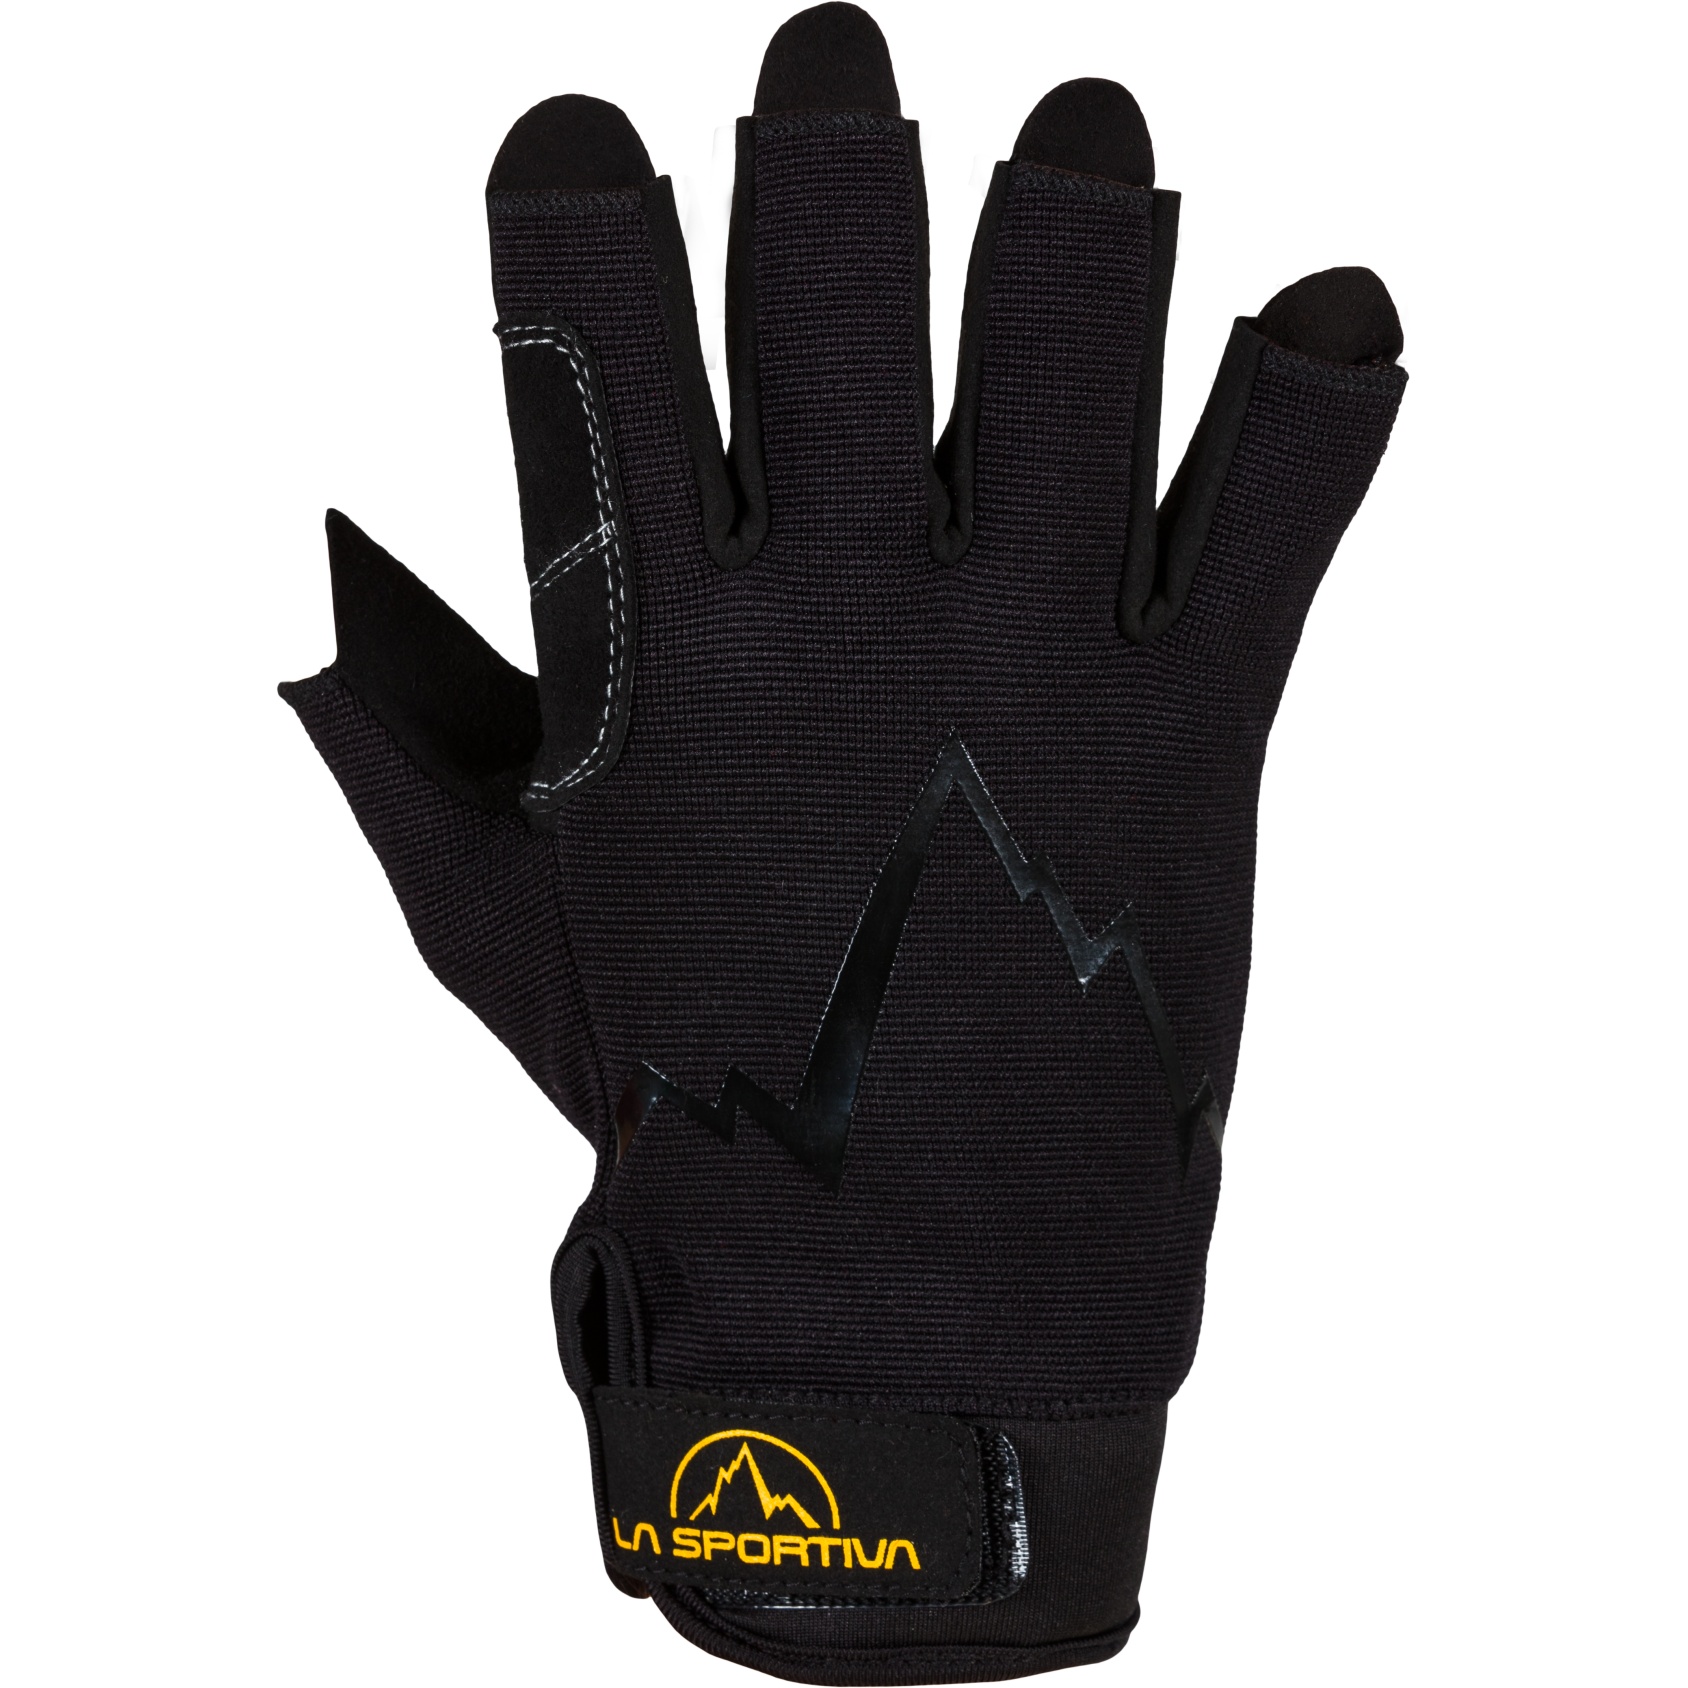 Picture of La Sportiva Ferrata Gloves - Black